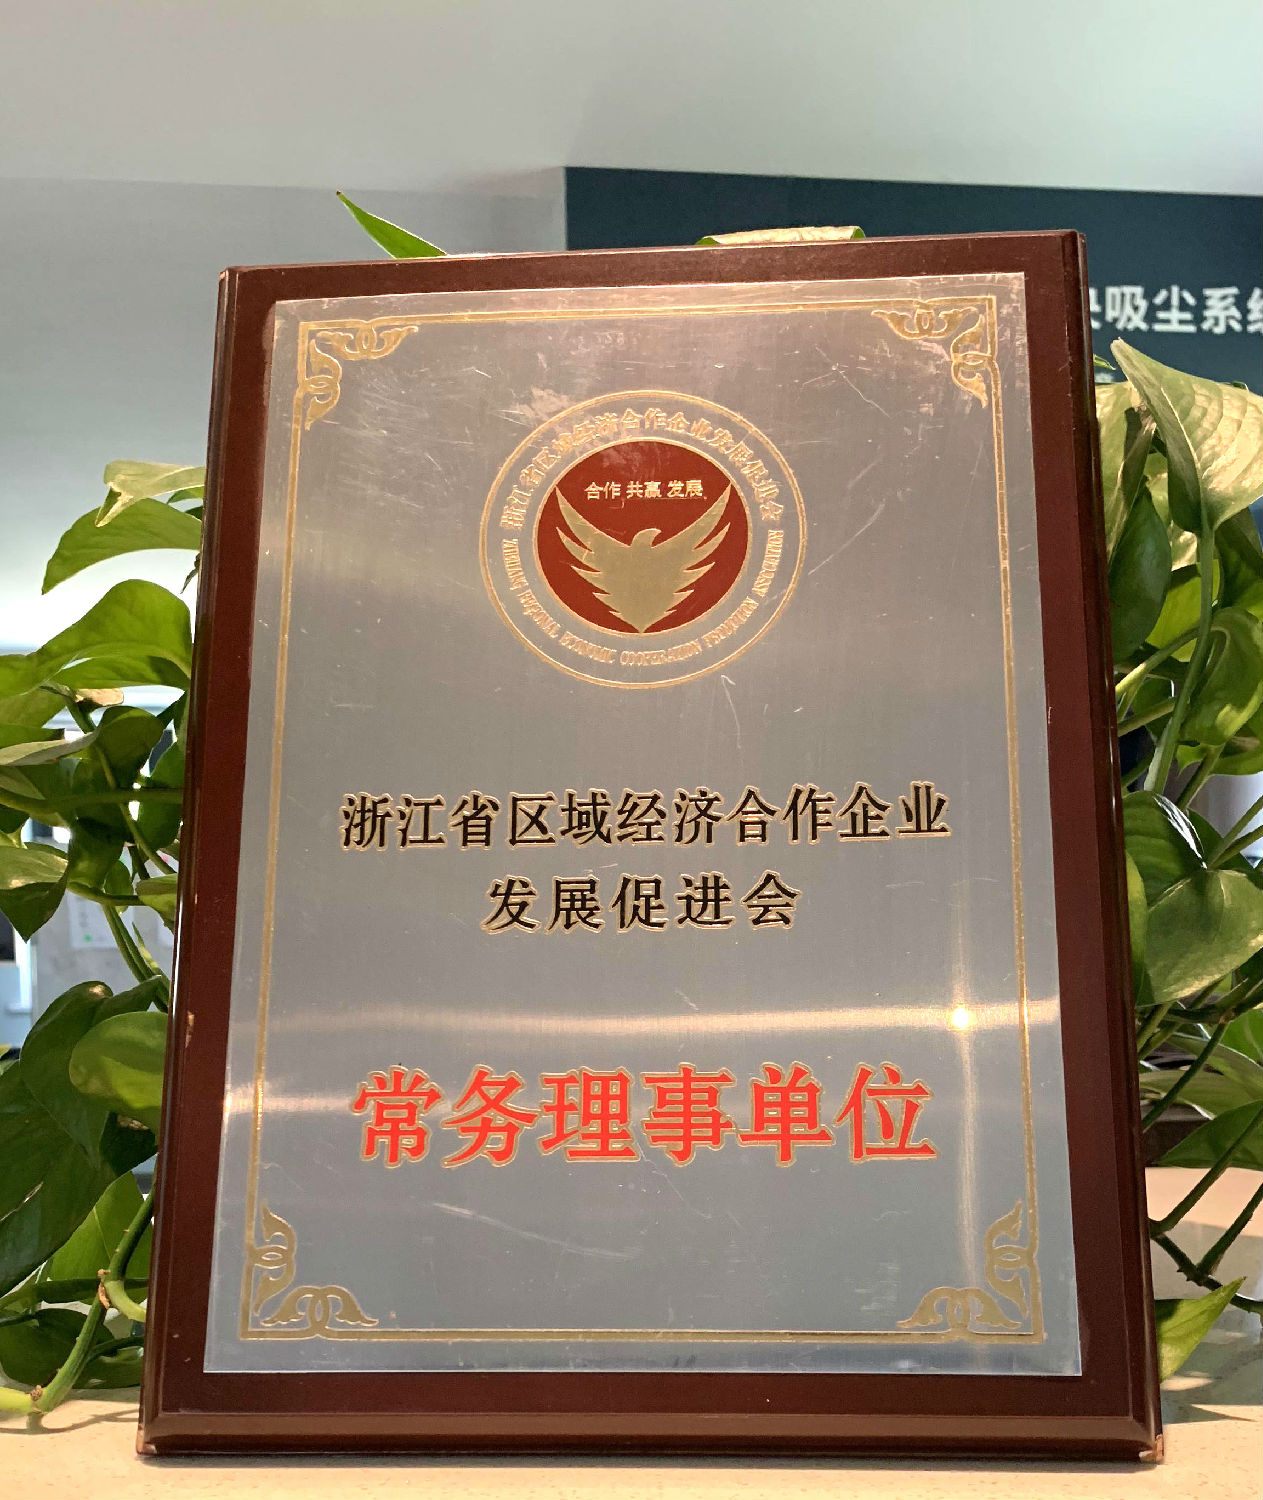 日新环境 浙江省区域经济合作企业发展促进会常务理事单位